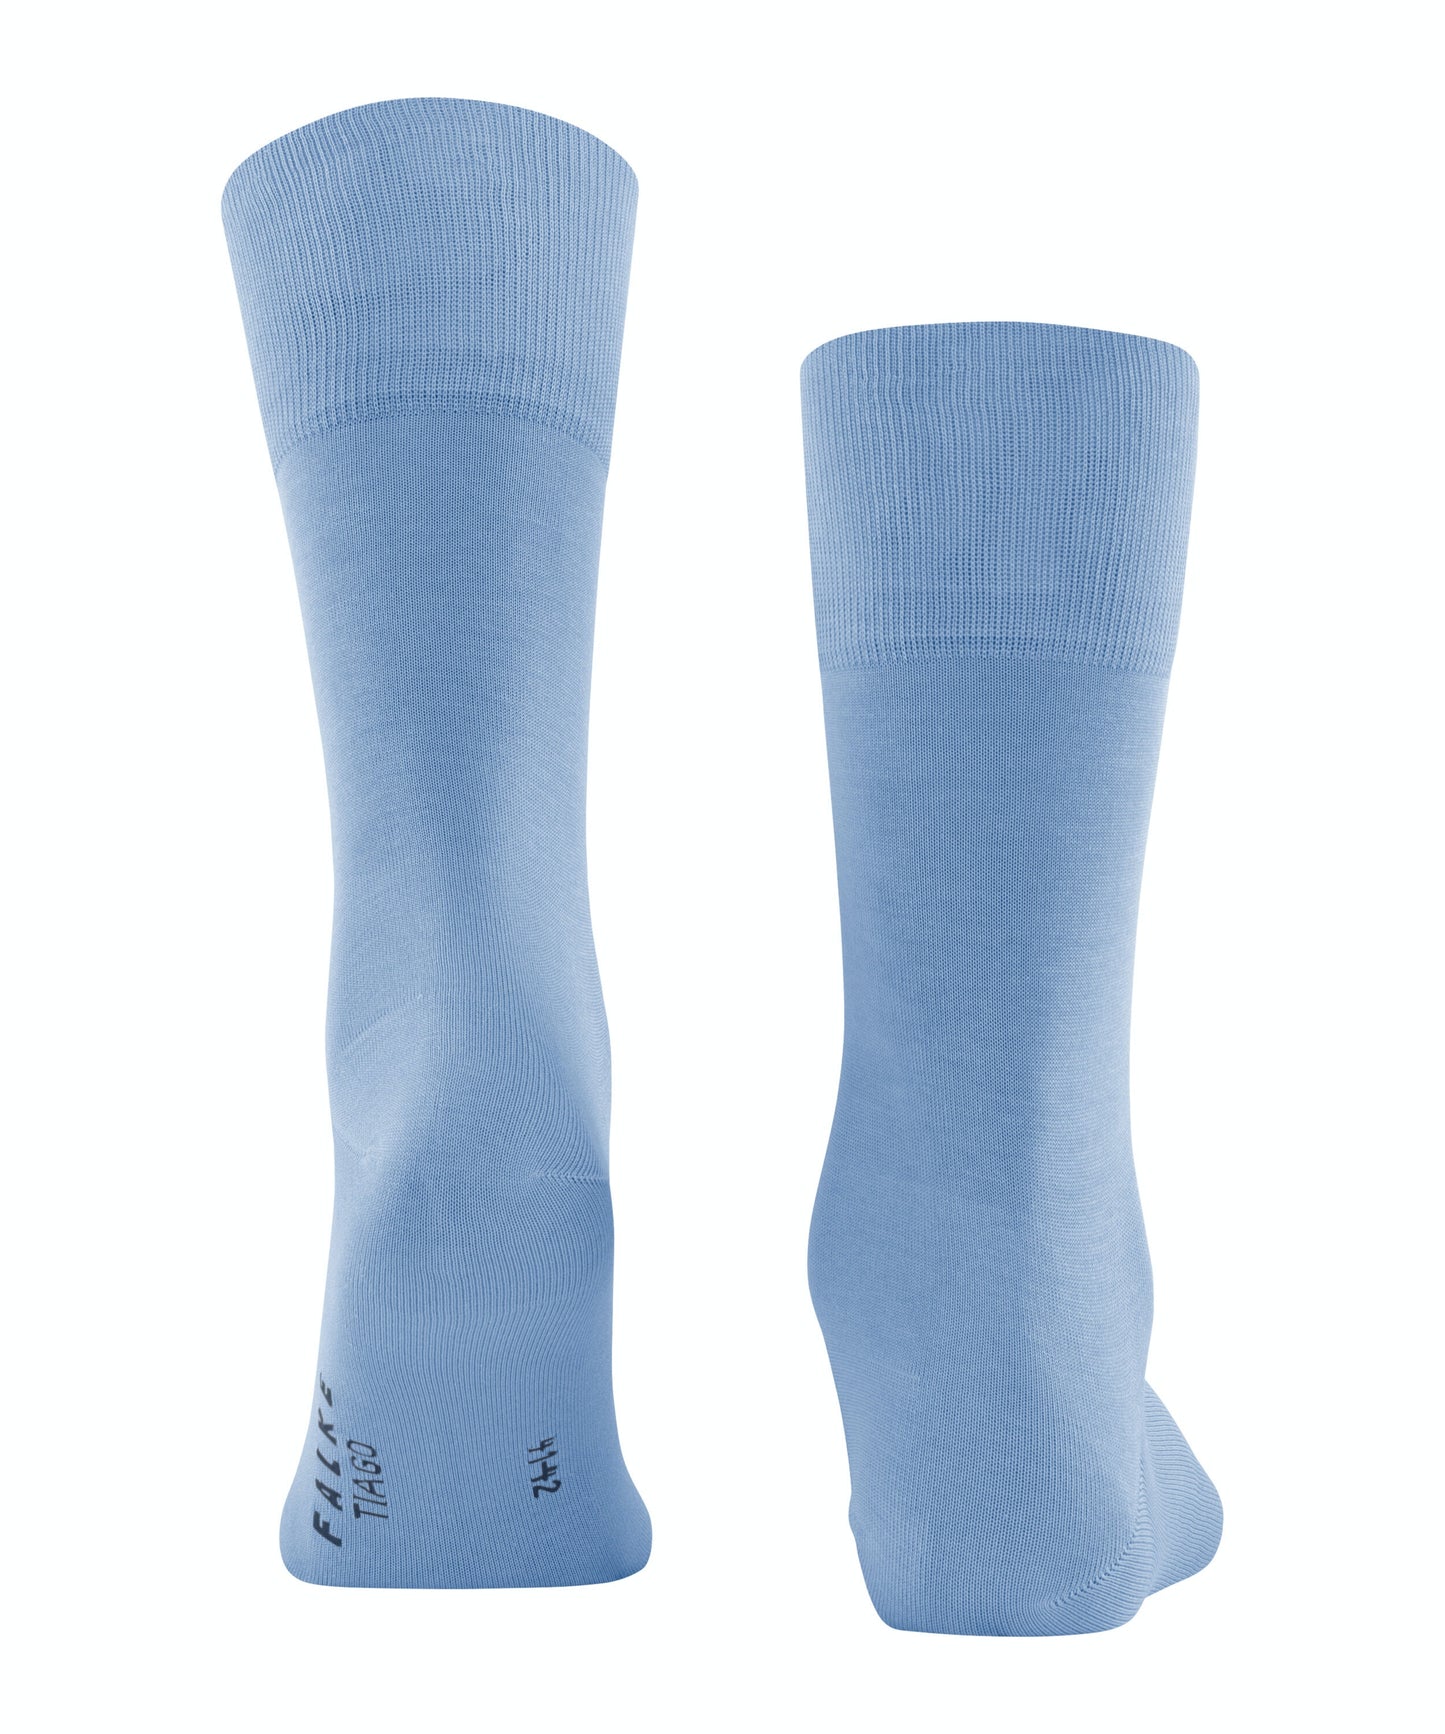 FALKE TIAGO Socks in Cornflower Blue 14662